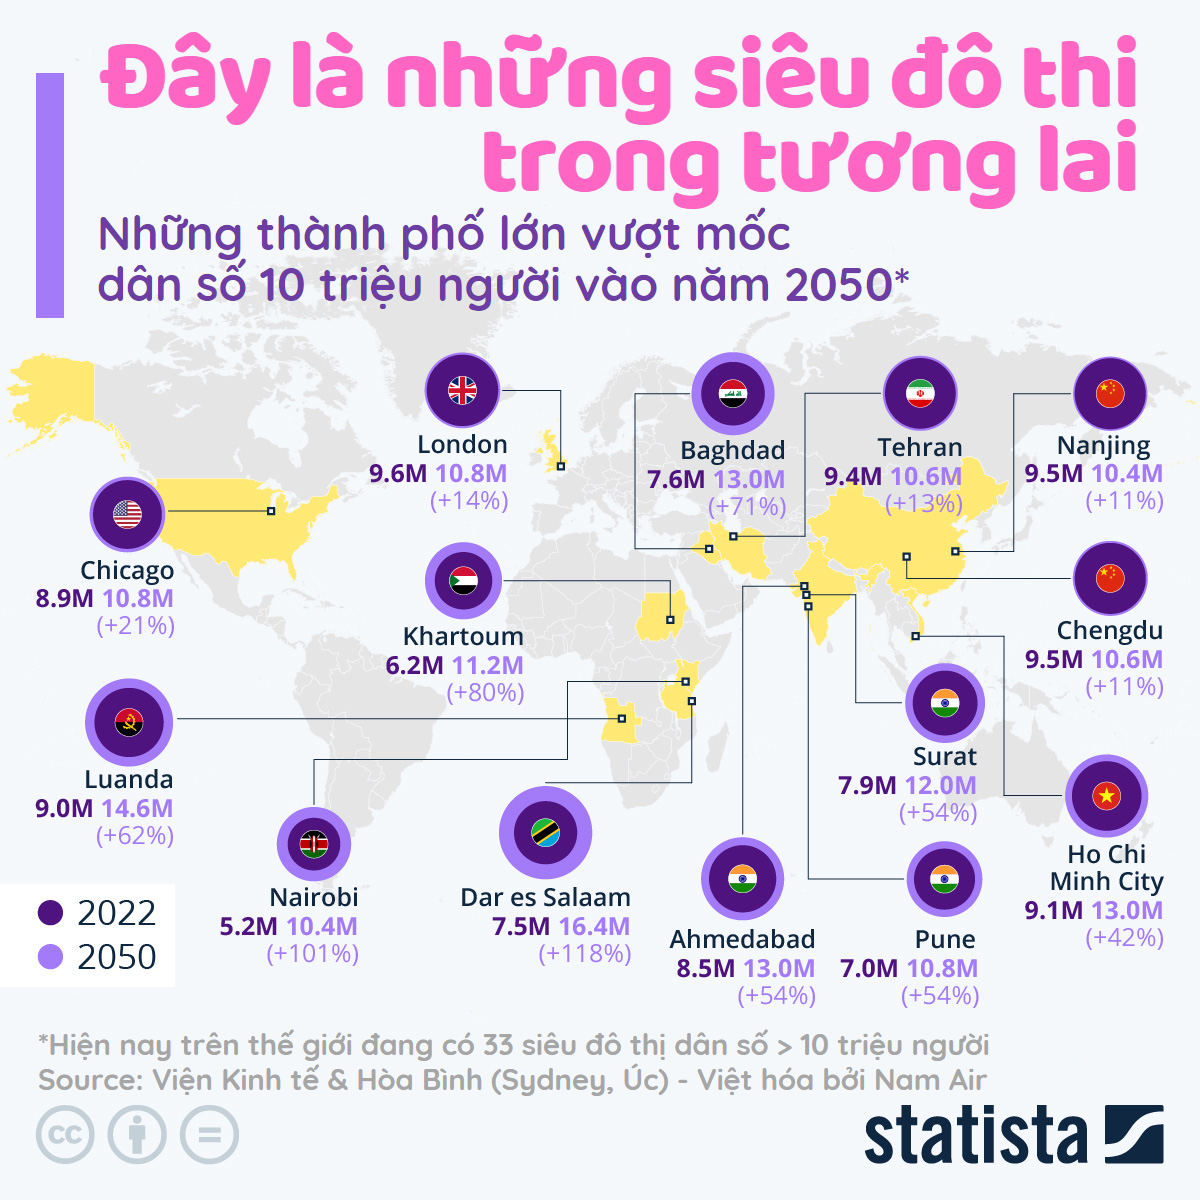 tinhte-infographic-sieu-do-thi-megacities.png